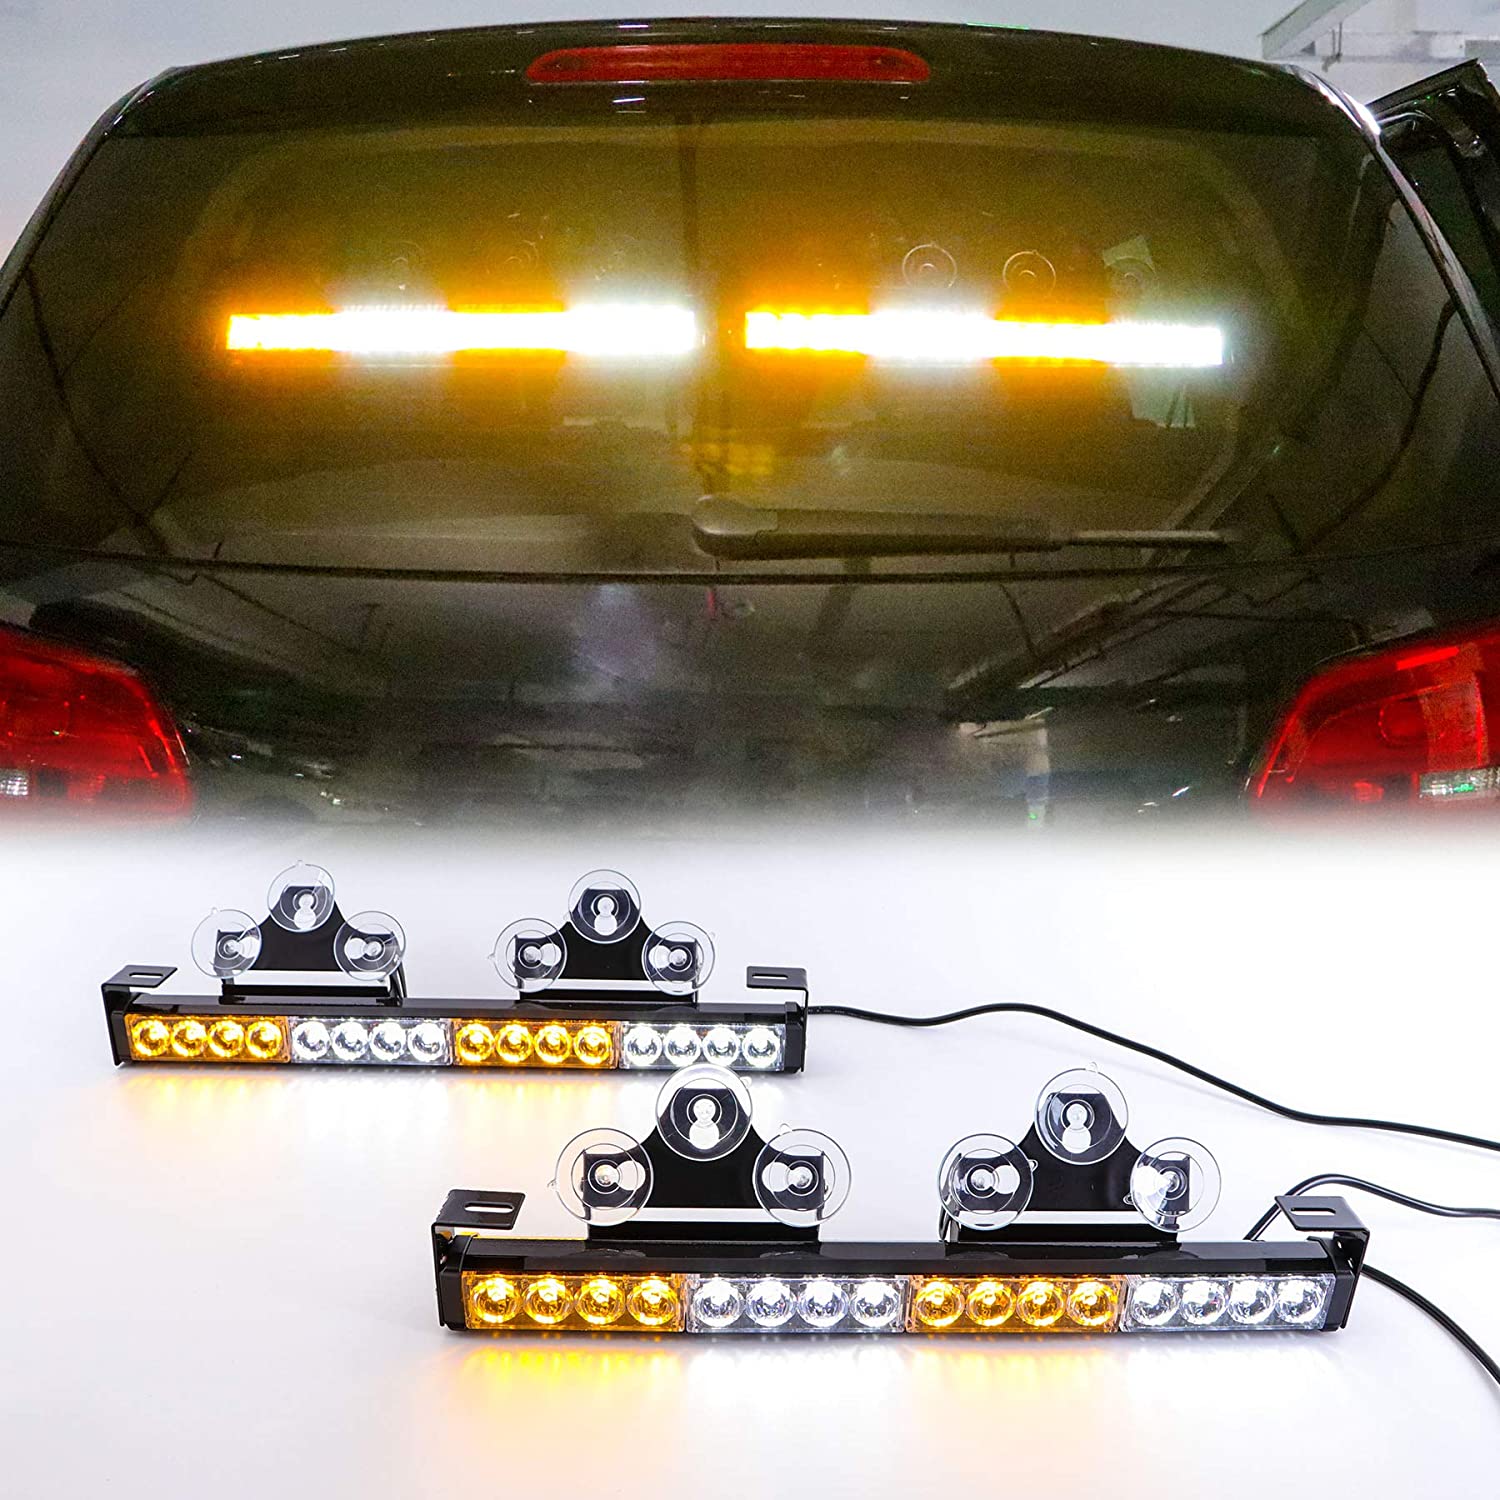 Luci a LED lampeggianti per l'auto giallo bianco multi colore